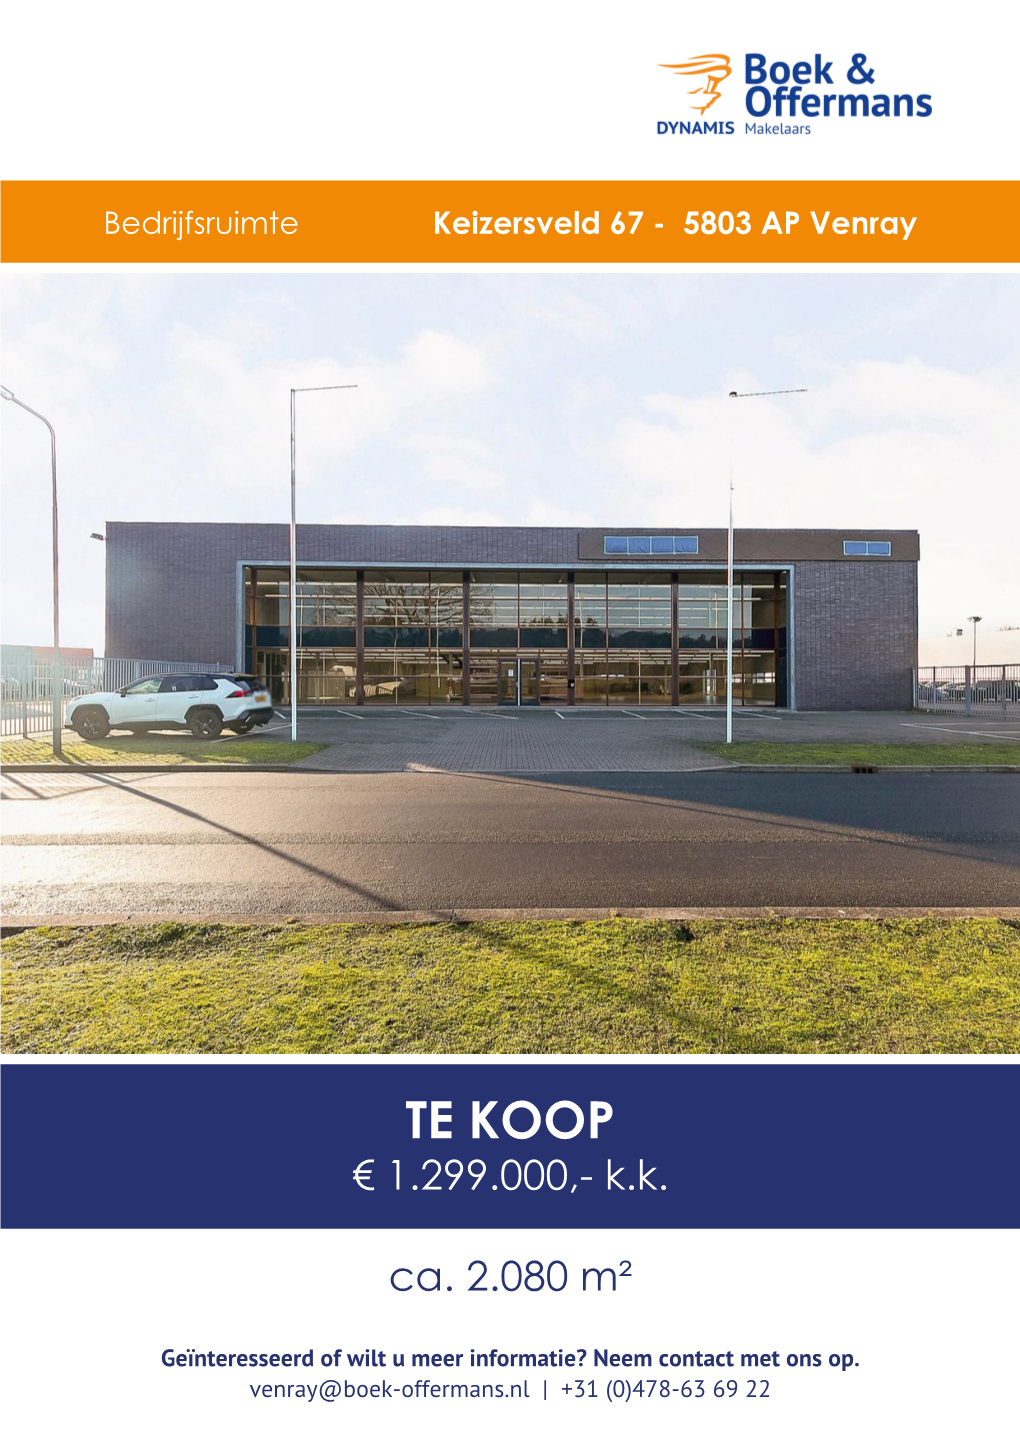 Keizersveld 67 in Venray Voor € 1.299.000